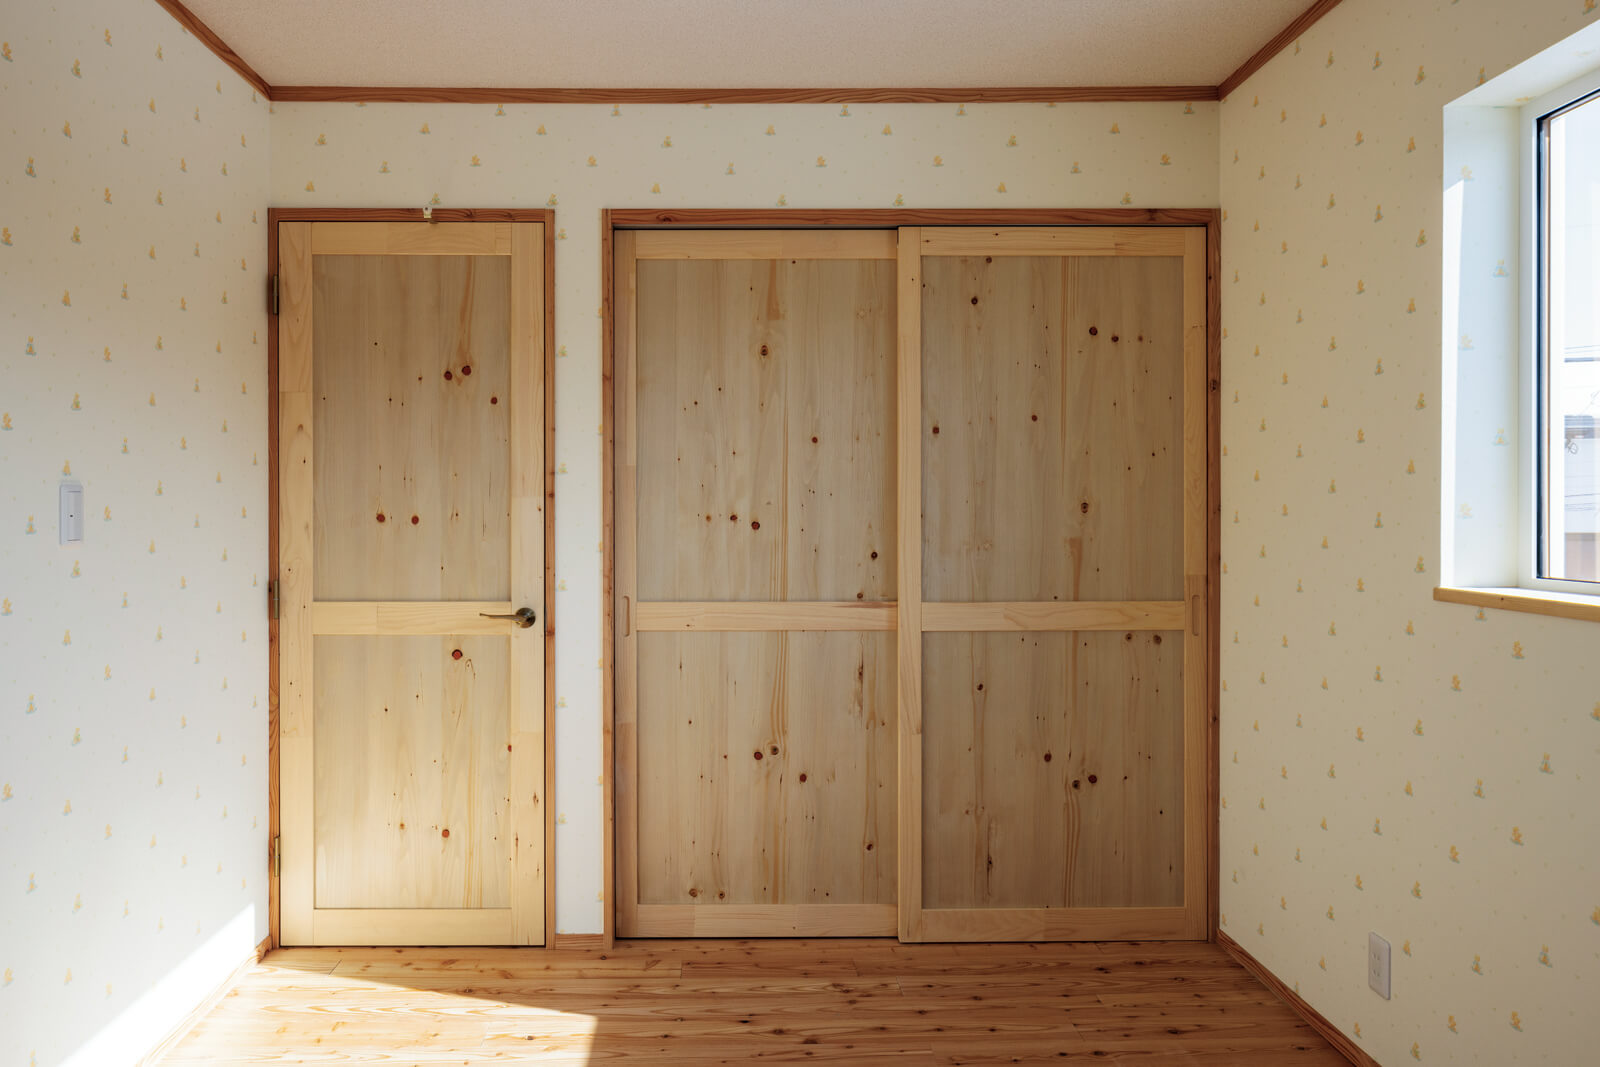 カサシマ建設の大きな特徴は、自社で製作する木製の建具類。各部屋のドアや収納扉はすべて無垢材で造作したもの